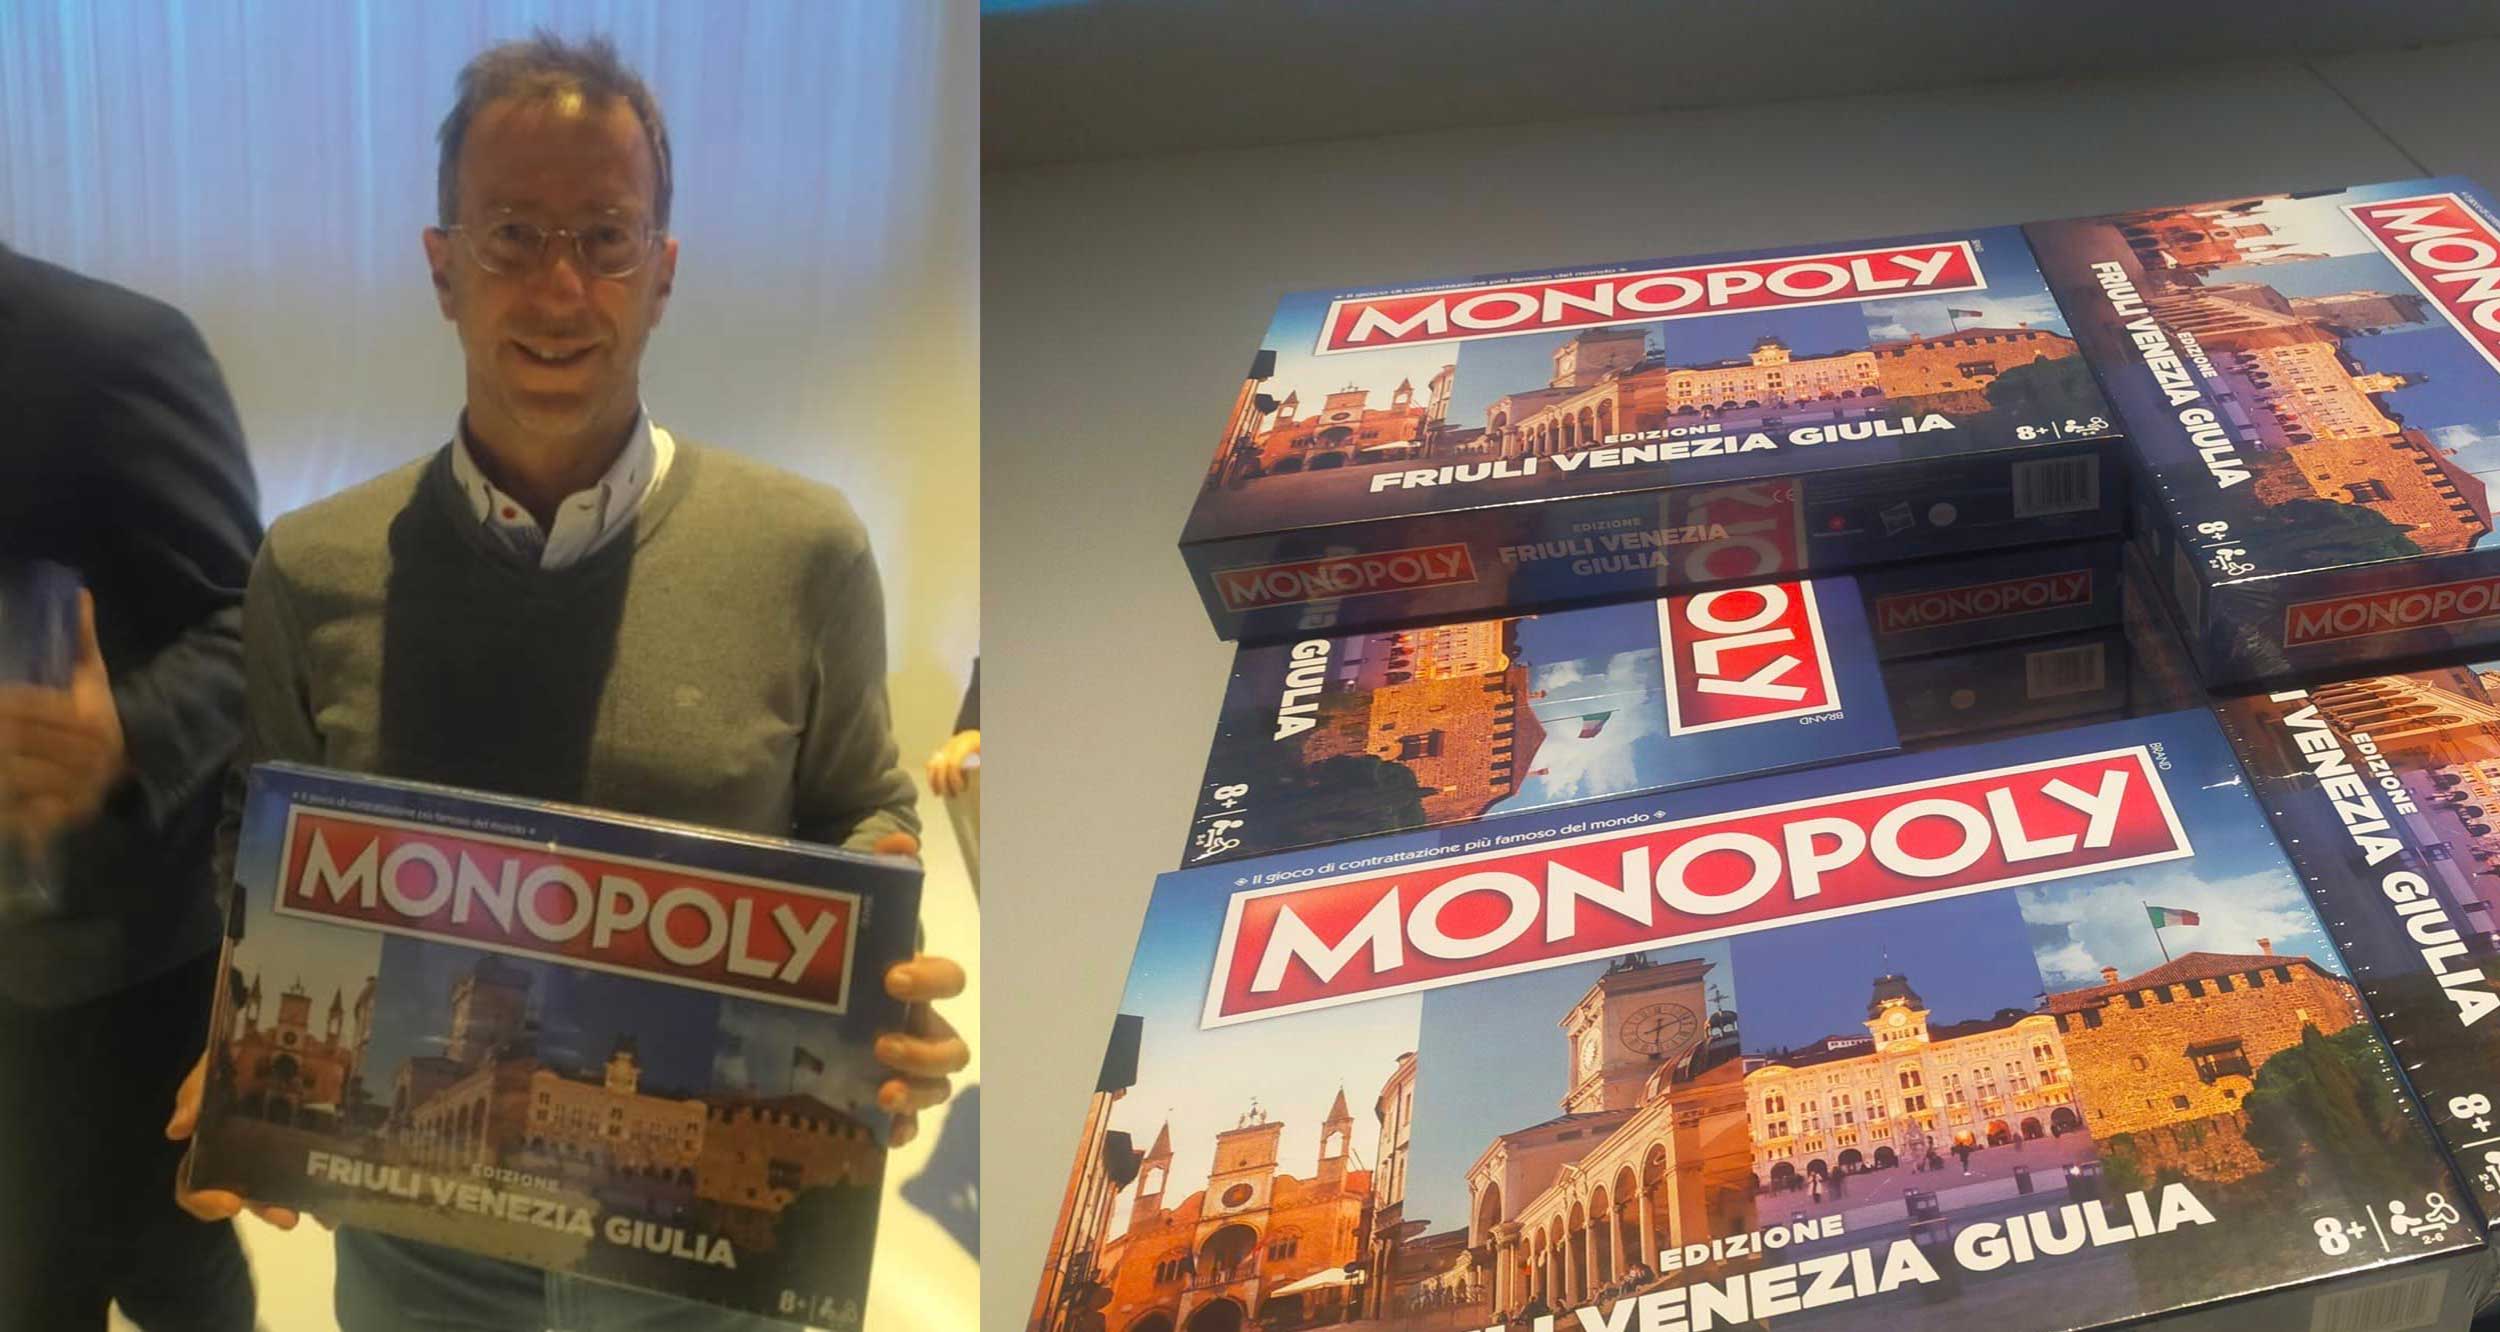 Monopoly Muggia Friuli Venezia Giulia